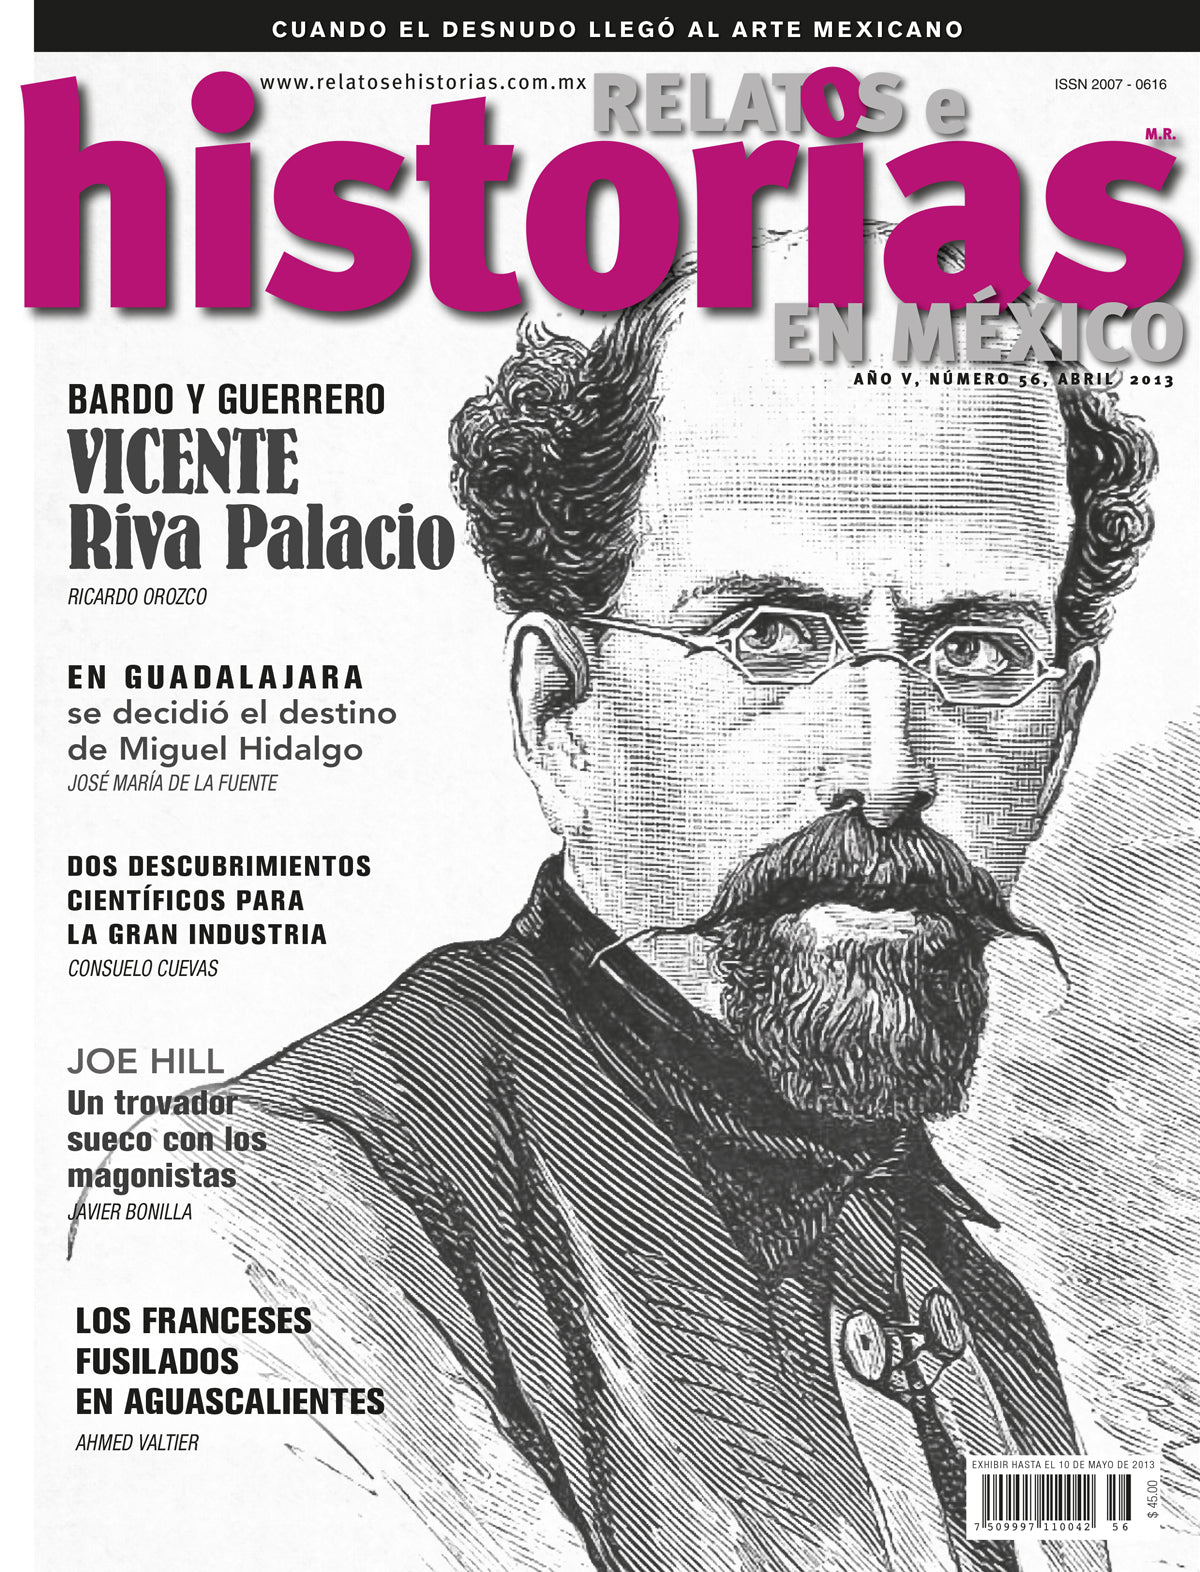 Vicente Riva Palacio. Bardo y guerrero